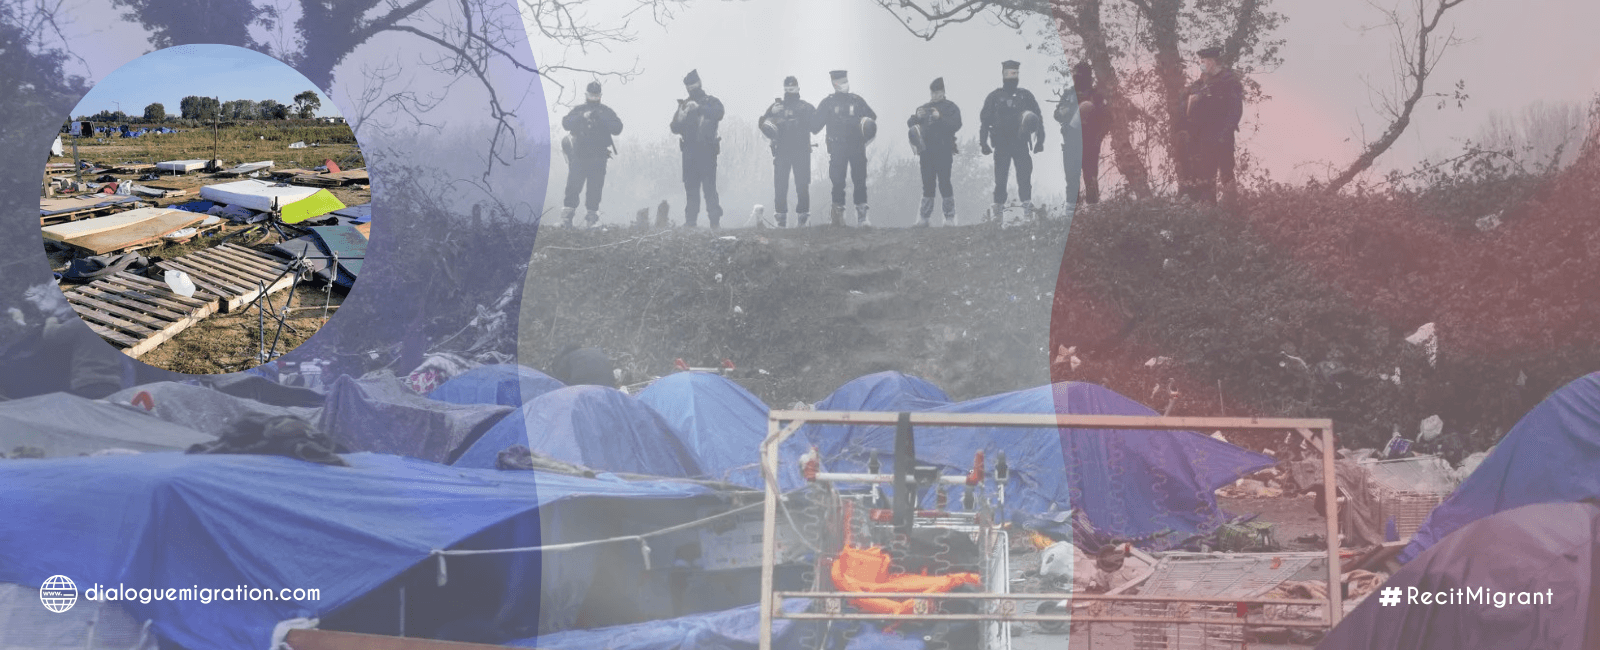 Grogne des associations suite à l’évacuation d’un camp de migrants